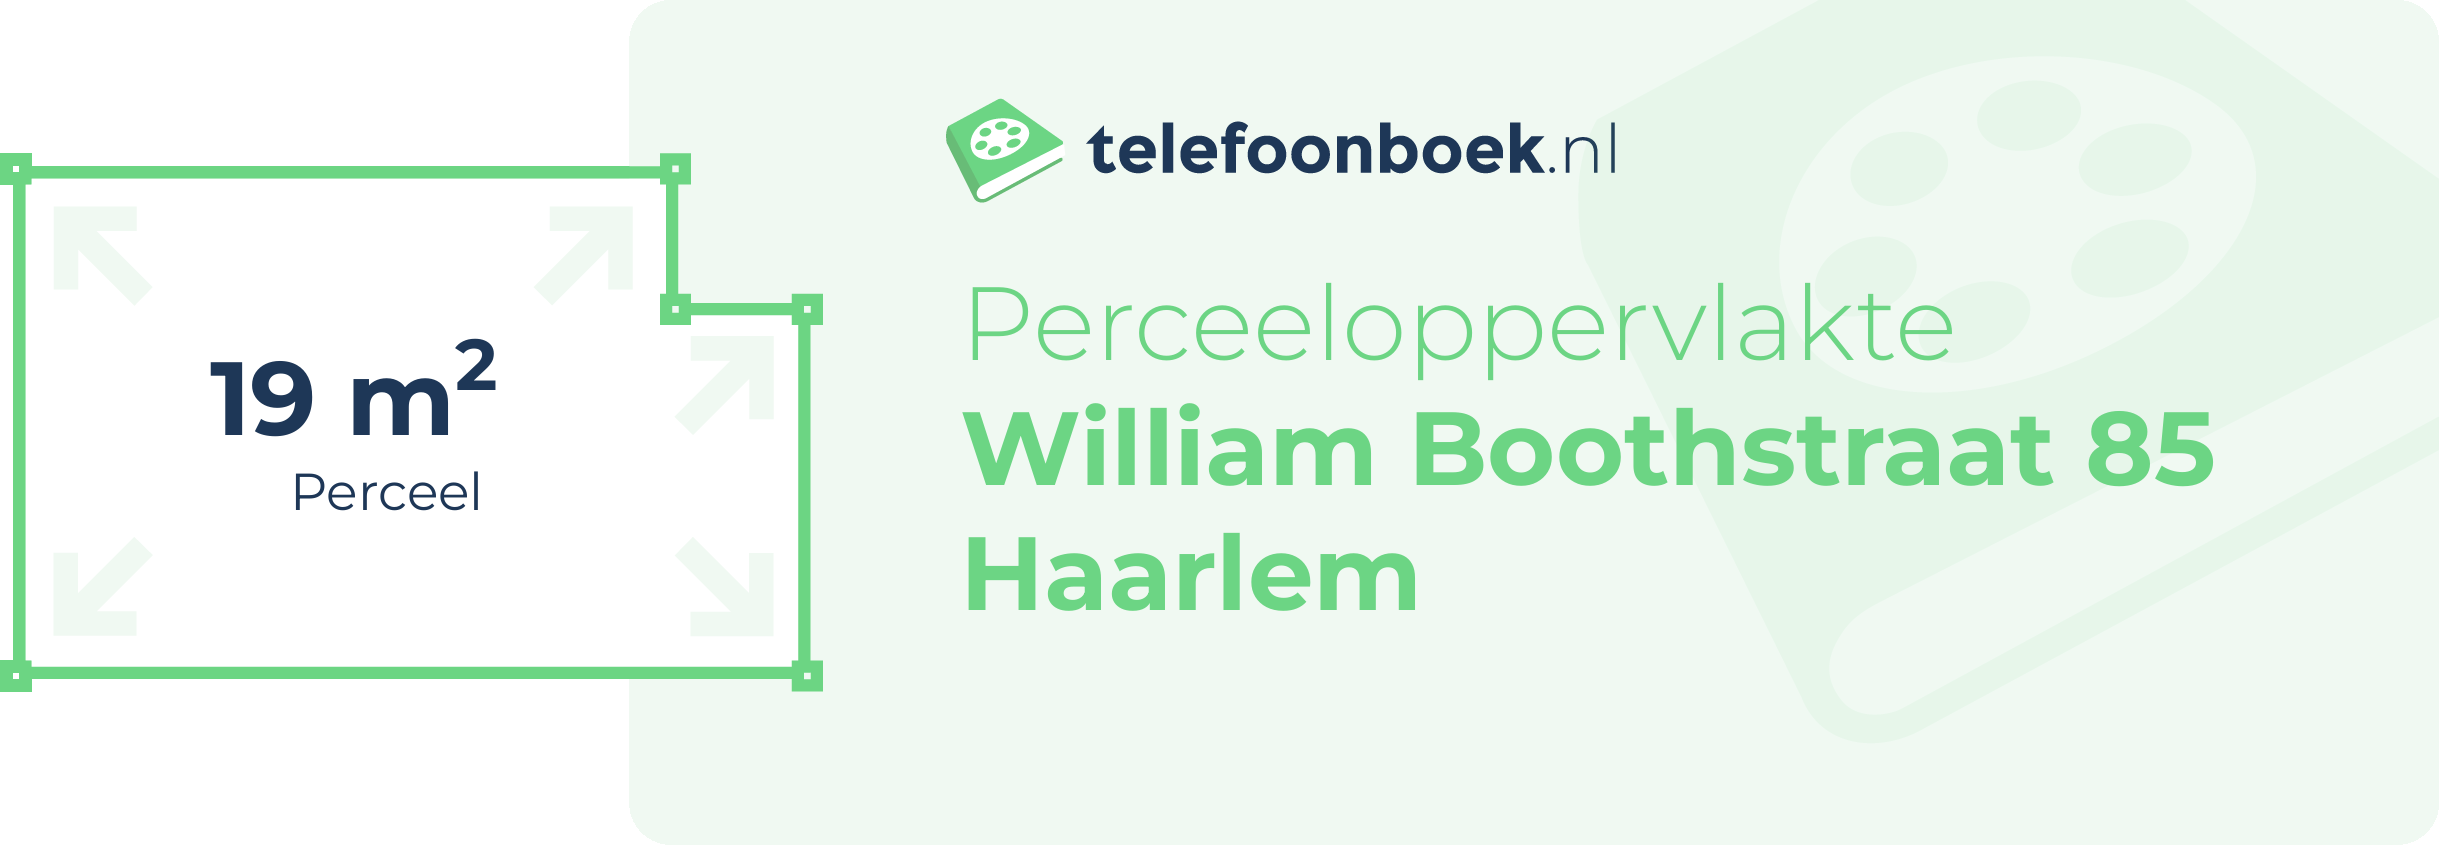 Perceeloppervlakte William Boothstraat 85 Haarlem